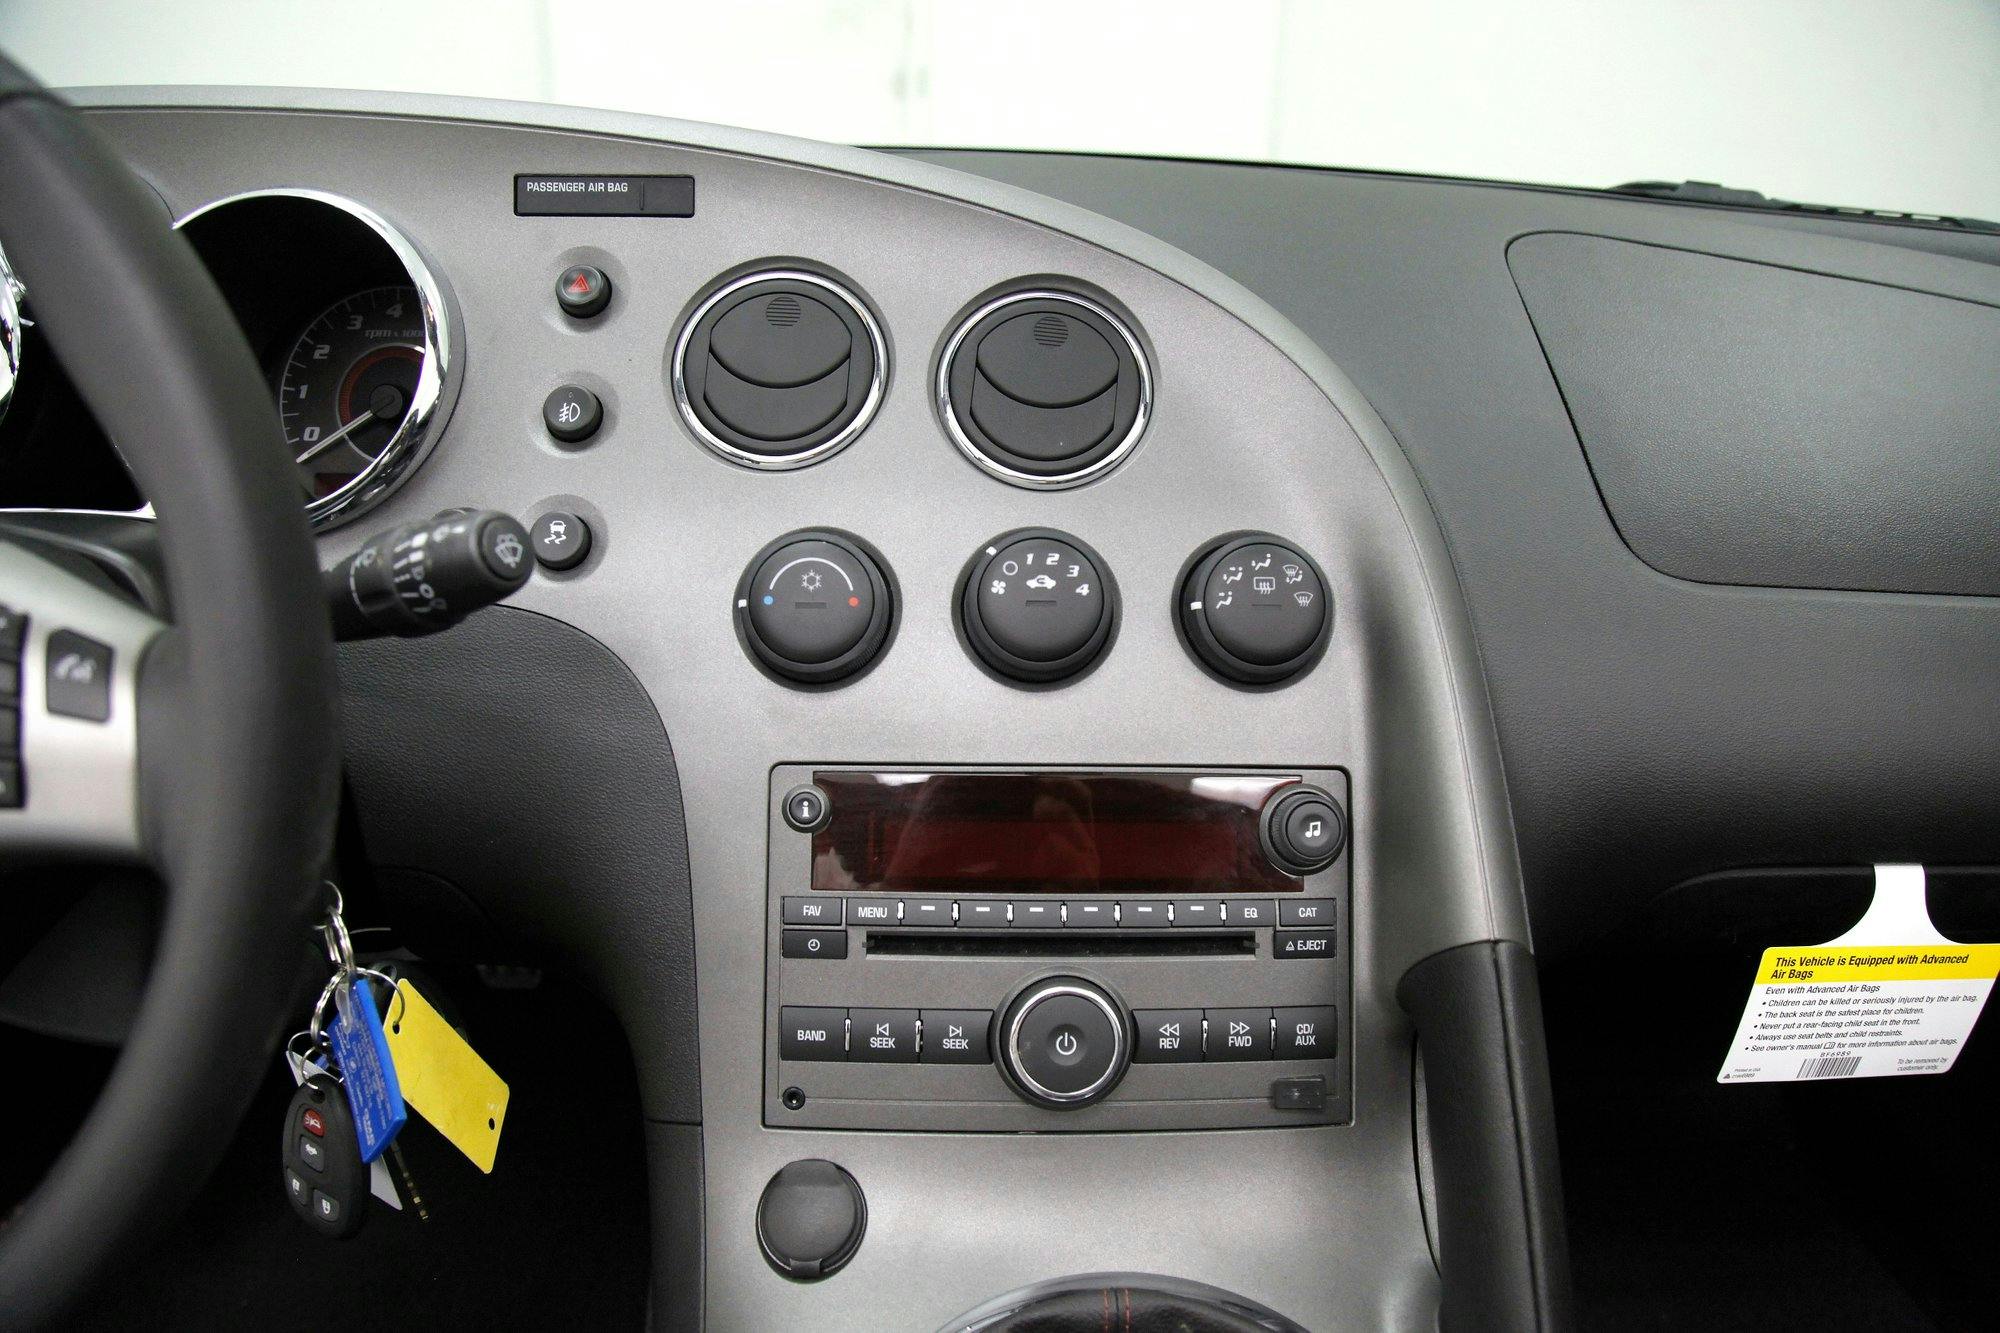 2009 Pontiac Solstice GXP interior center dash